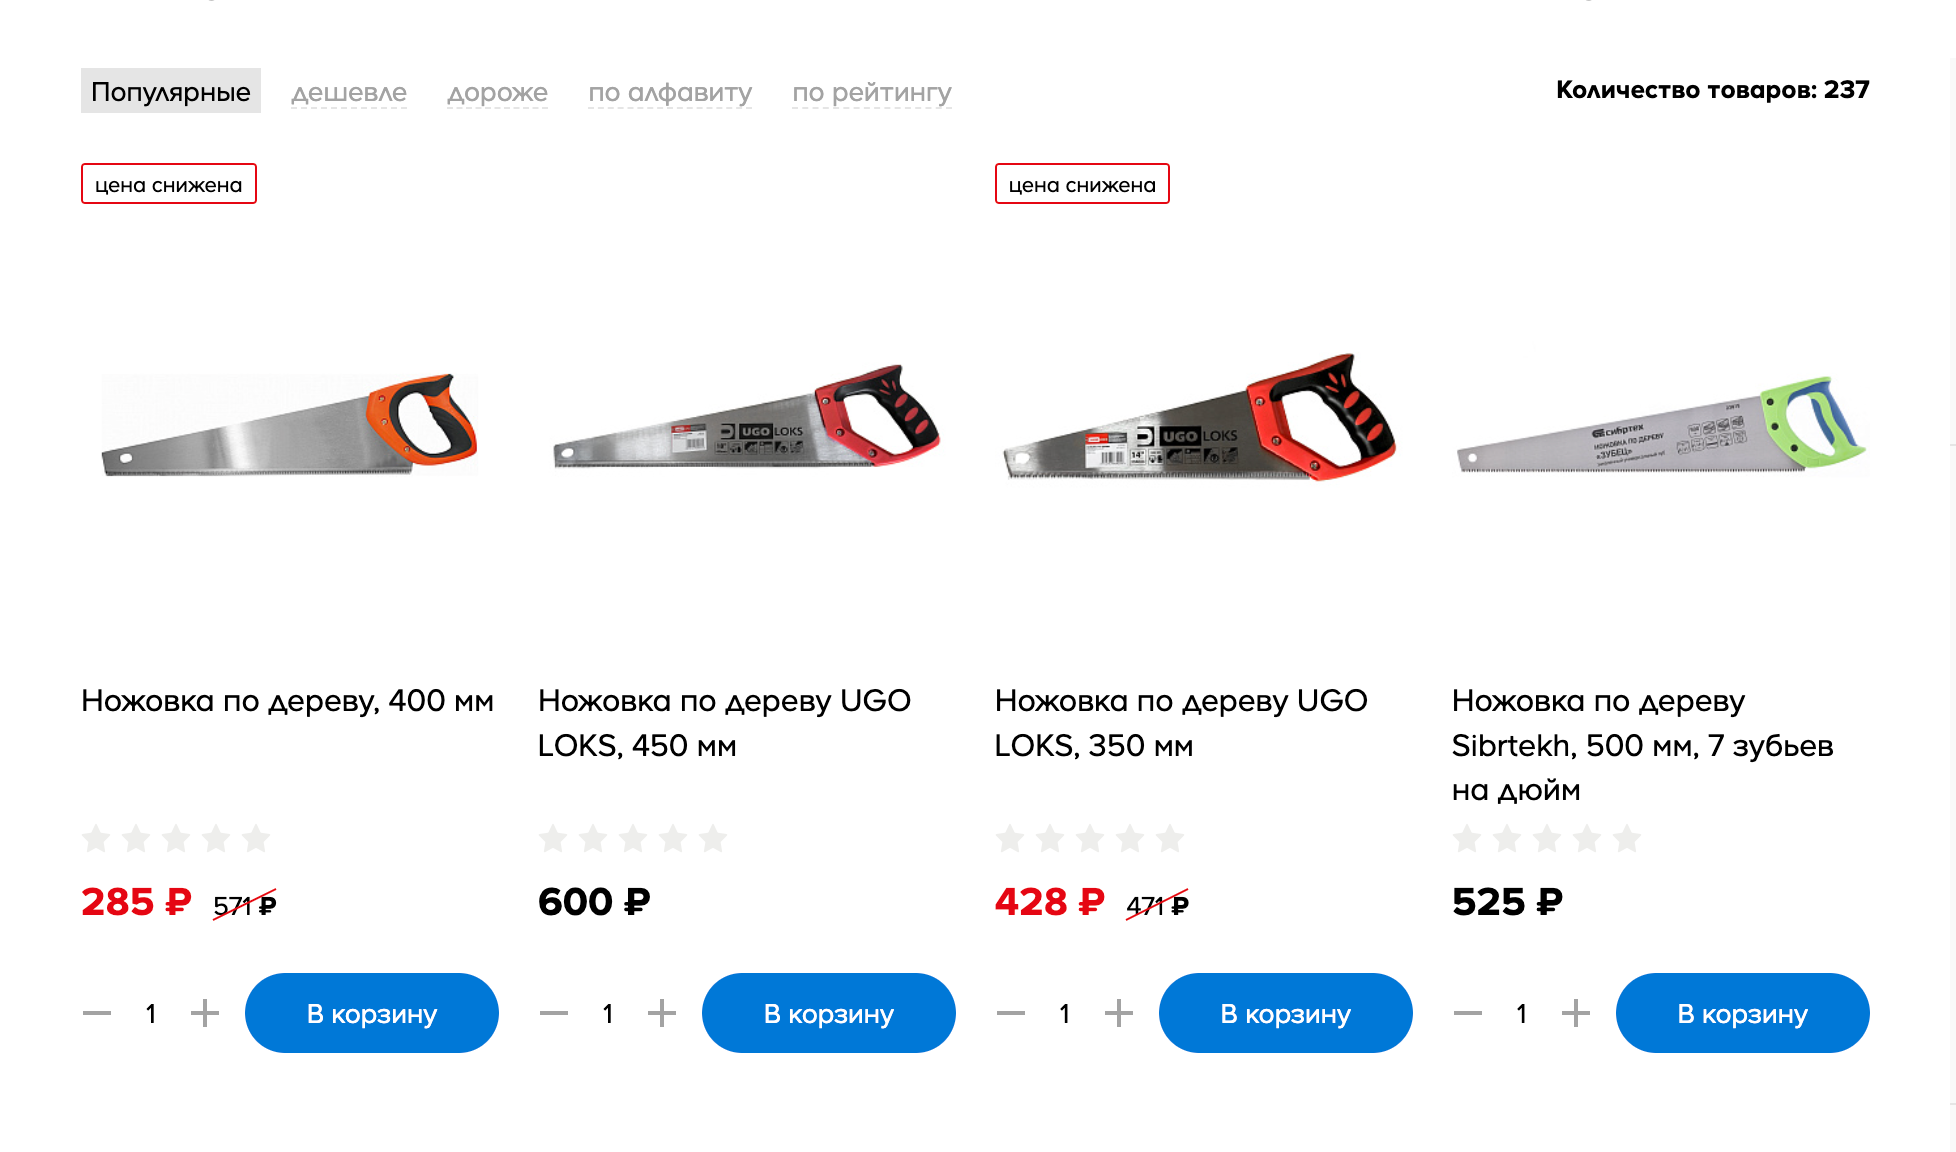 Самая дешевая ножовка по дереву стоит от 285 ₽. Источник: castorama.ru